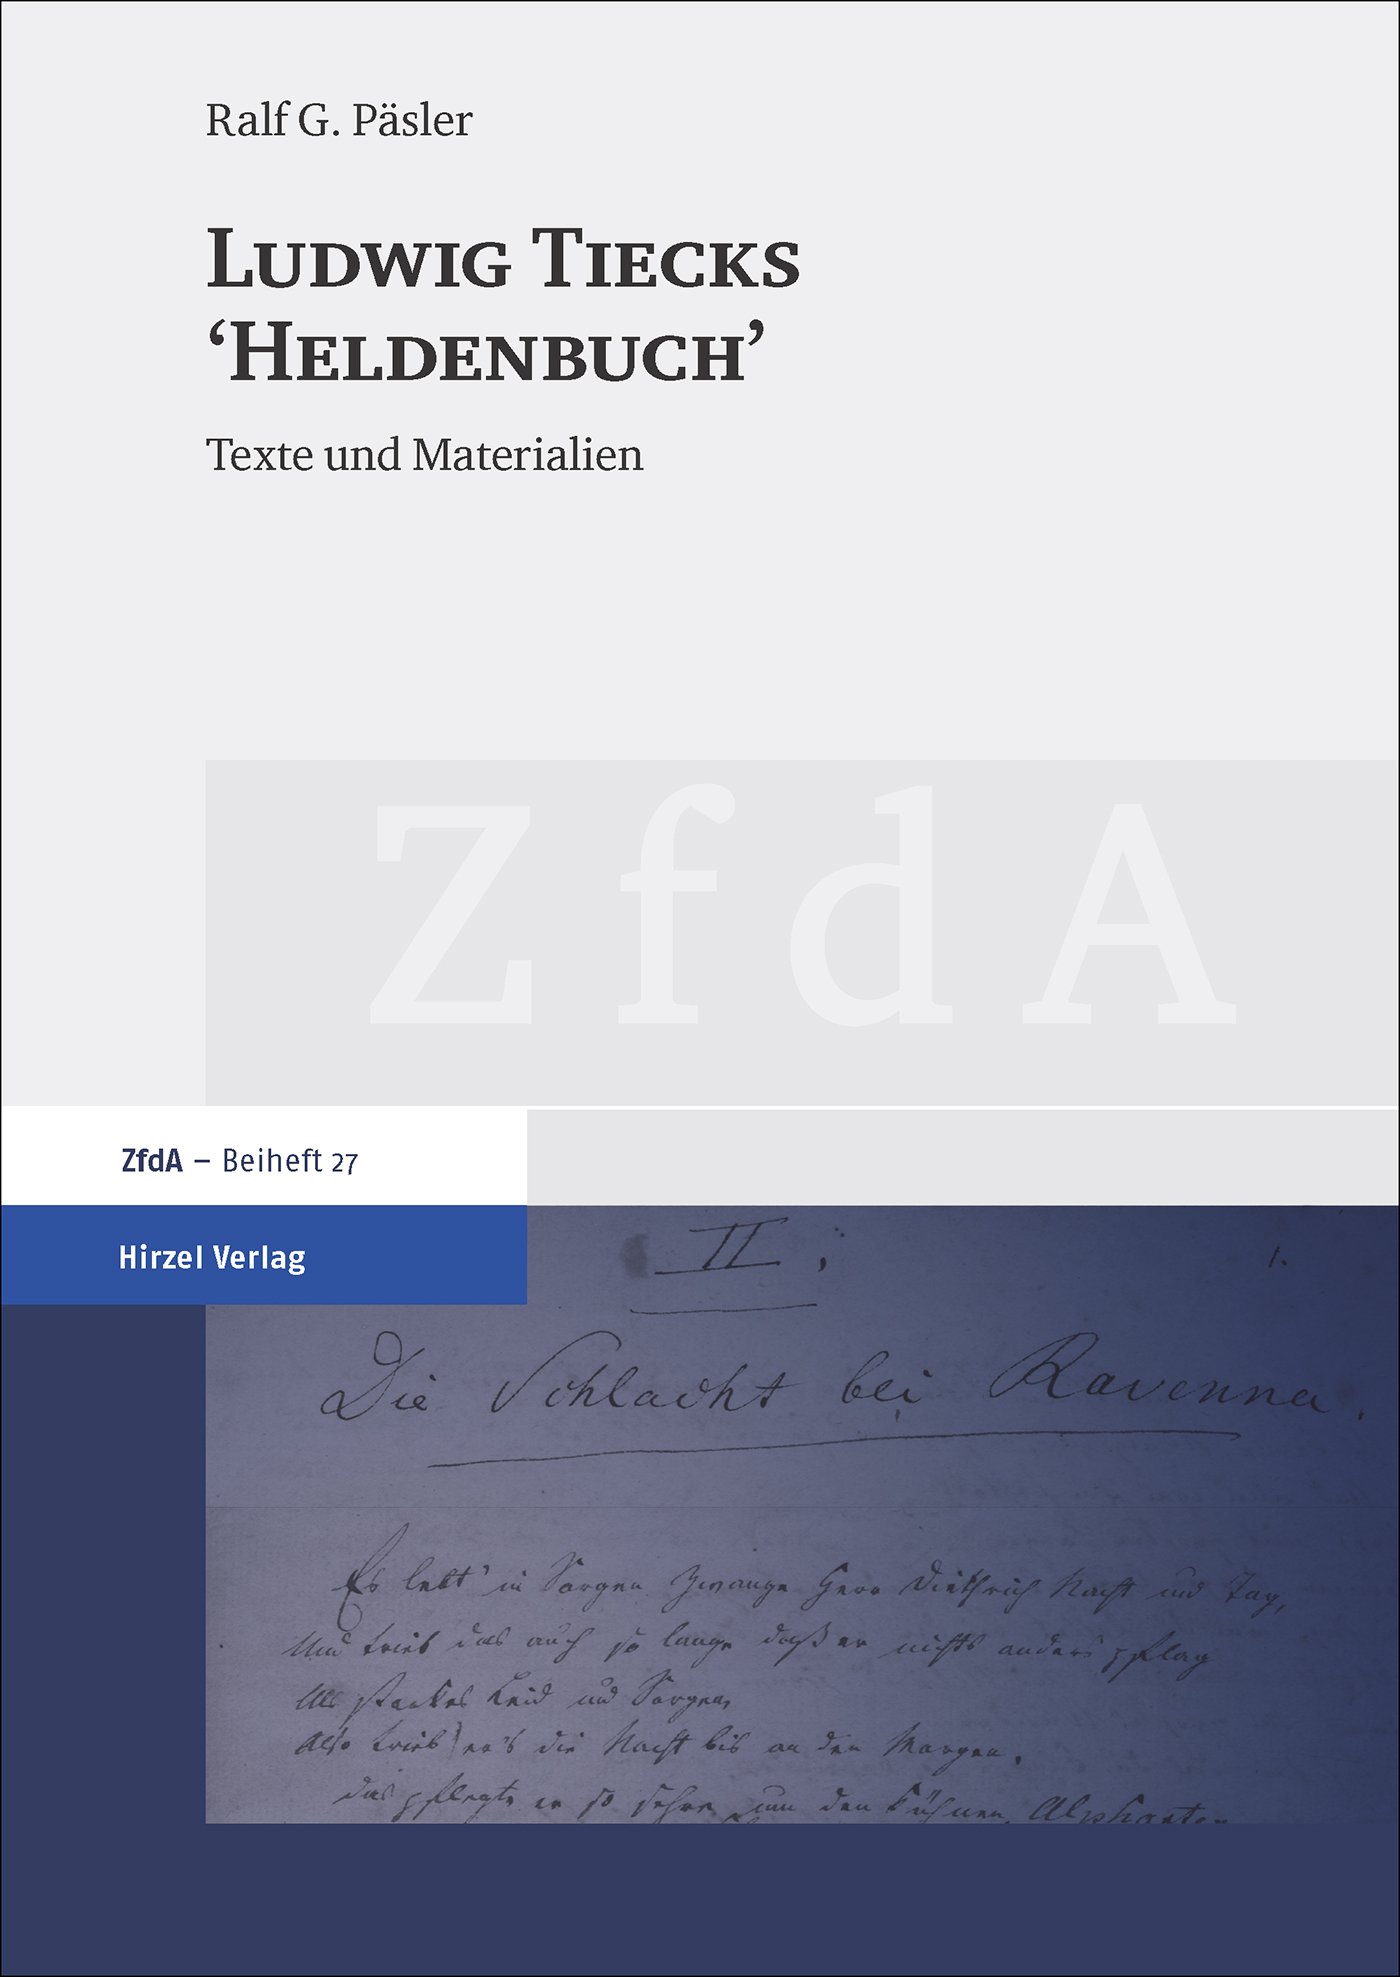 Ludwig Tiecks "Heldenbuch"